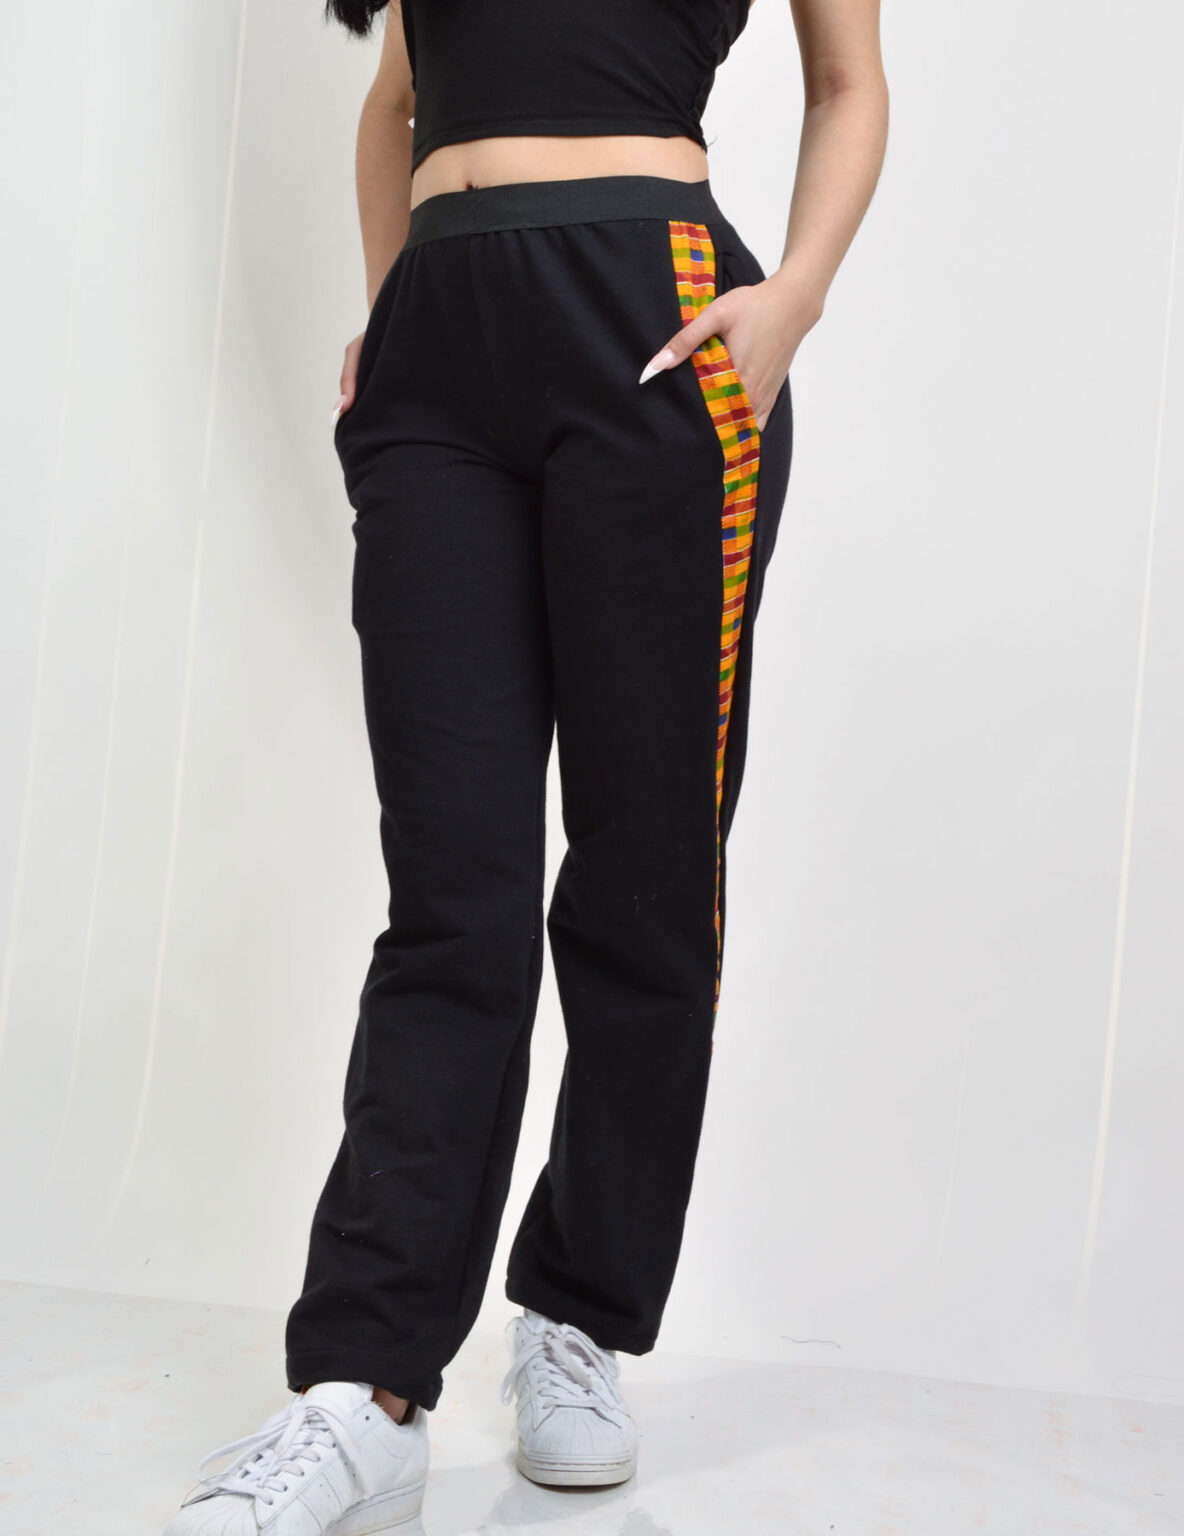 black jersey knit pants with kente strip | ankara pants styles